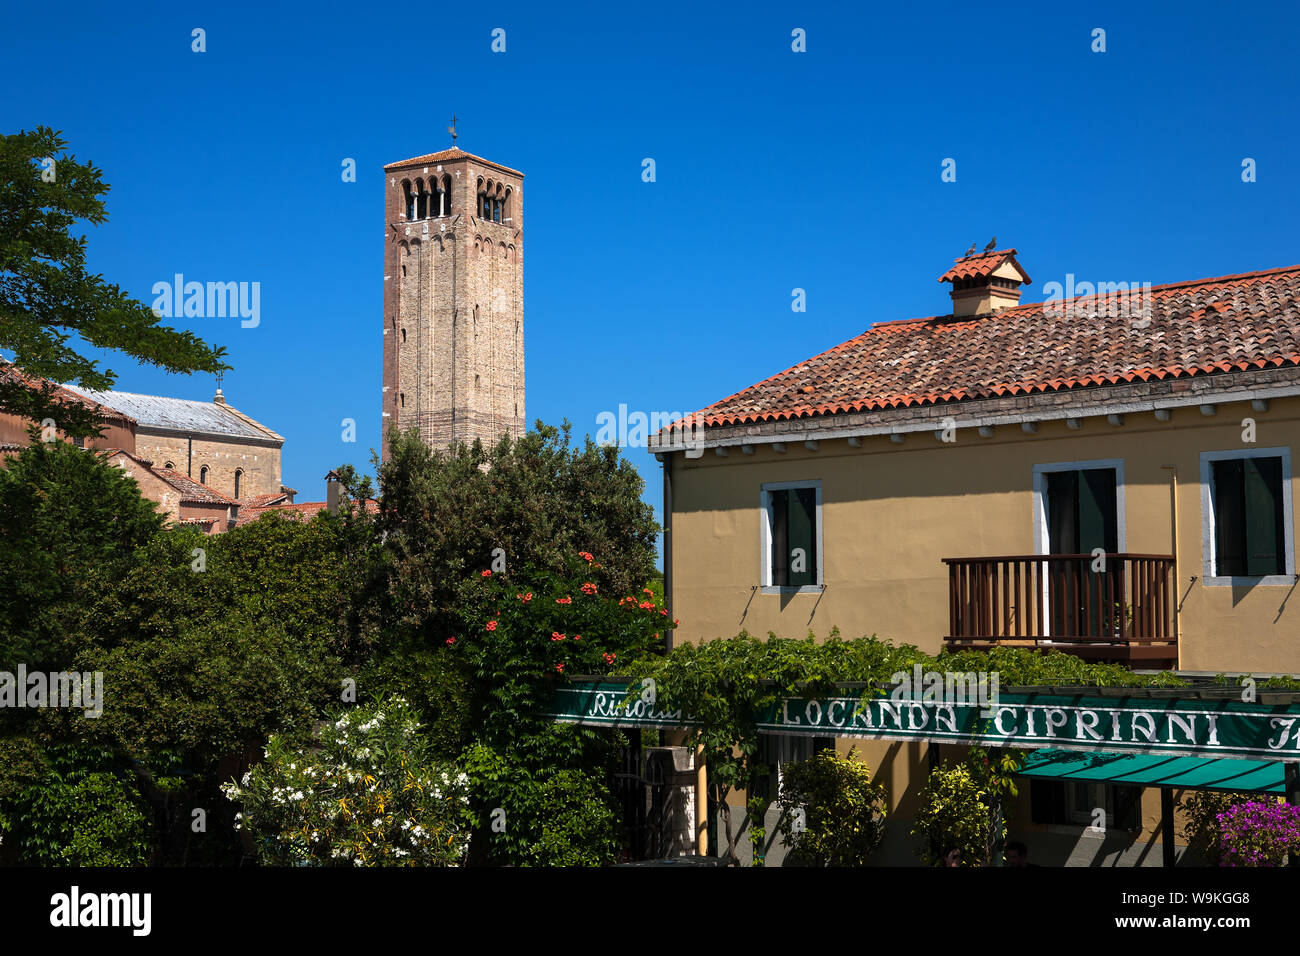 El famoso restaurante Locanda Cipriani, con el campanario de la catedral de Santa Maria Assunta, Torcello, más allá de la laguna veneciana, Veneto, Italia Foto de stock